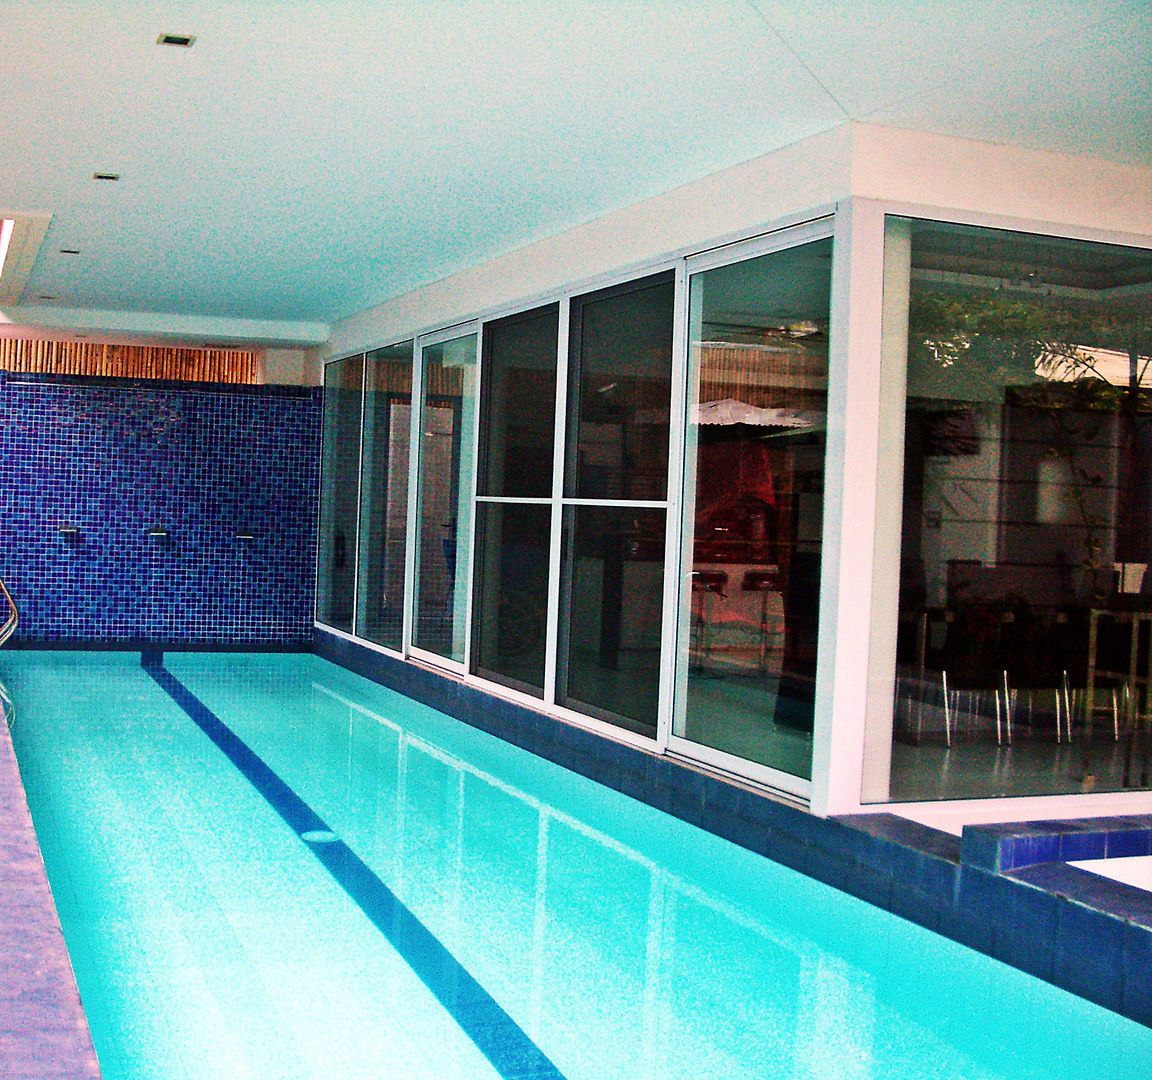 Bel Air Residence, Architect Manila Architect Manila Pool